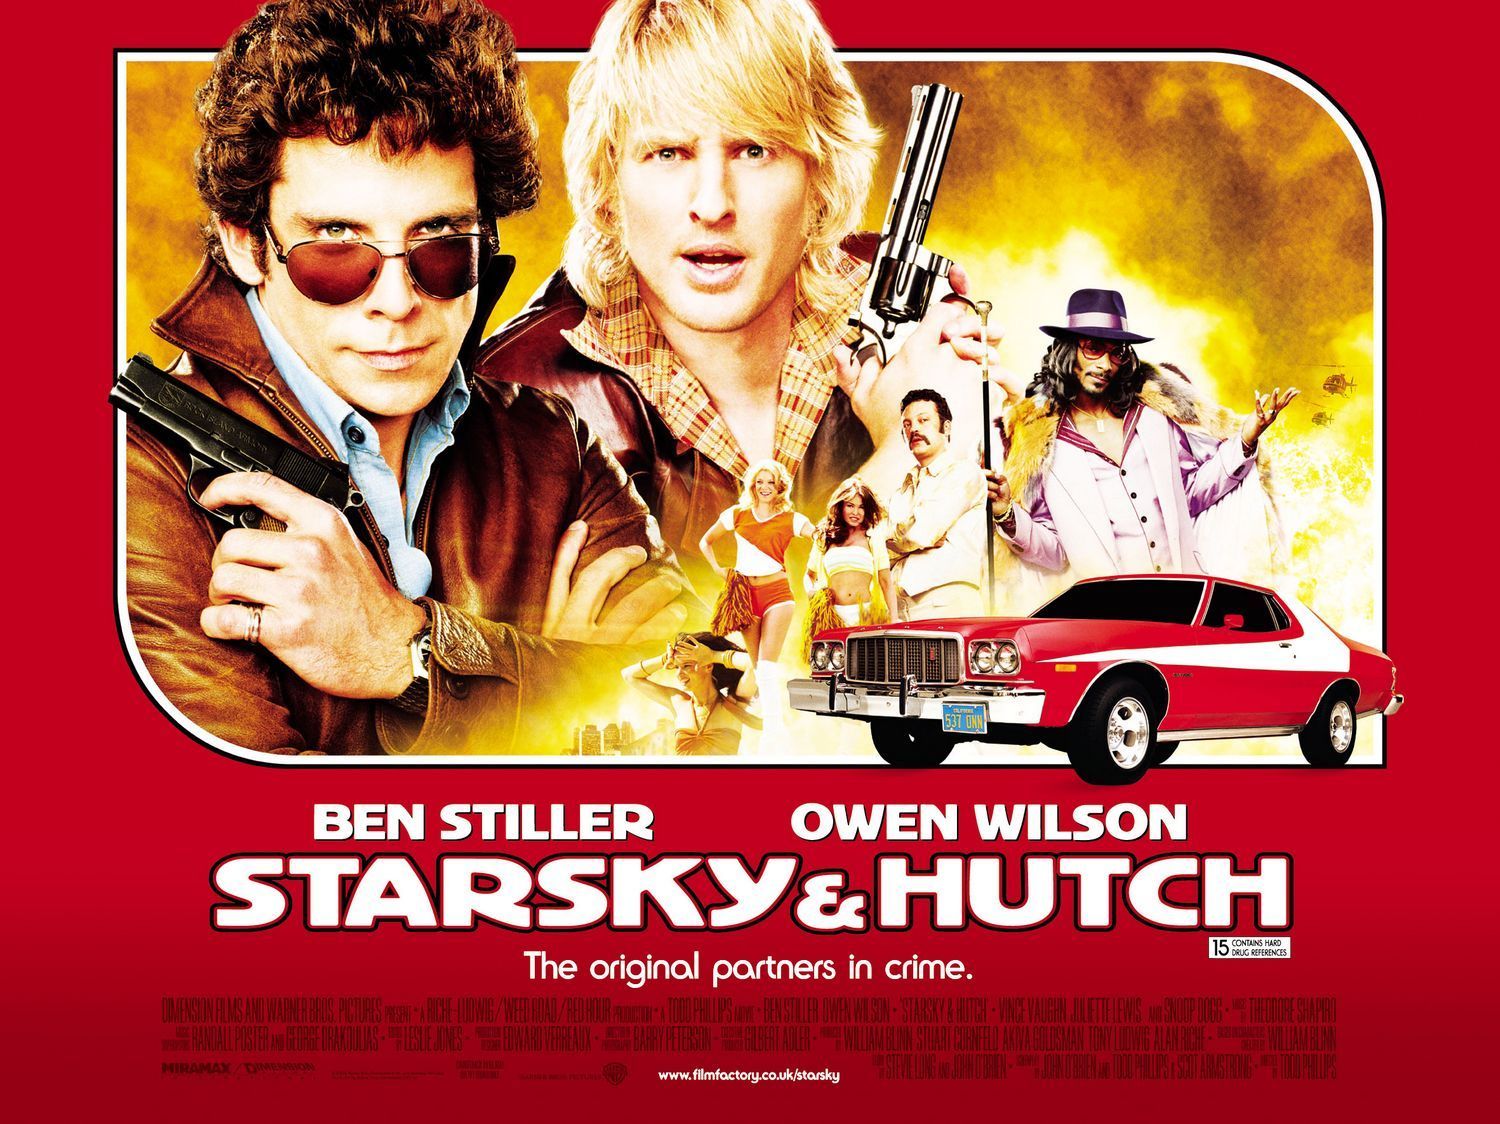 starsky-hutch-movie-poster-juliette-lewis-15075235-1500-1124.jpg